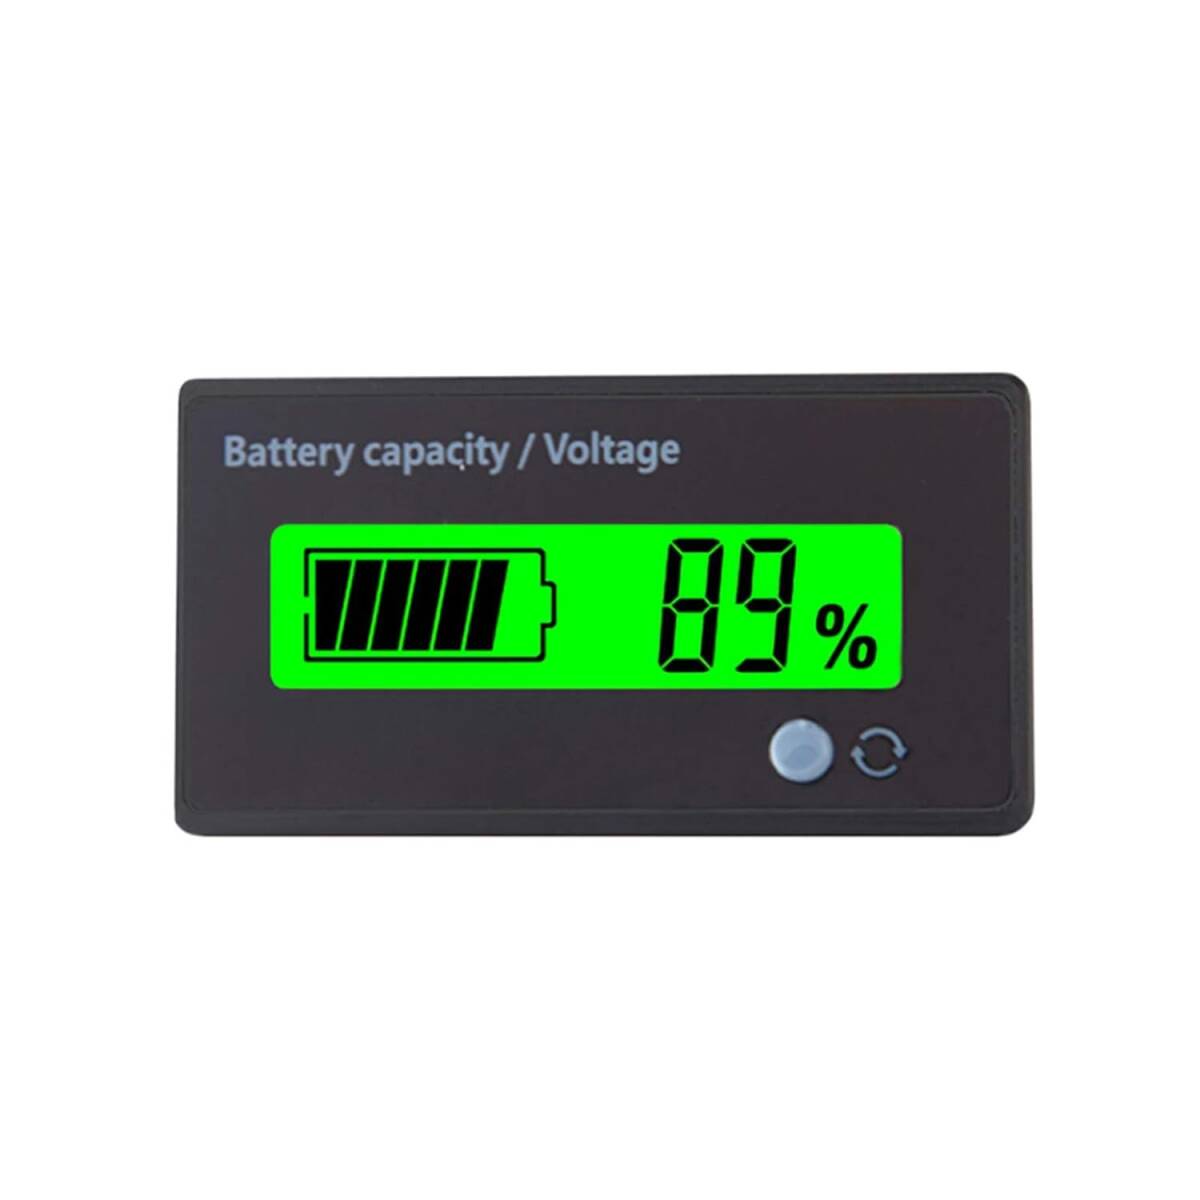 デジタル電圧計 バッテリー残量表示計 汎用型 DC 12V-48V リチウム電池 鉛蓄電池 リン酸鉄リチウムイオン電池 LCDディスプレイ バッテリーの画像1